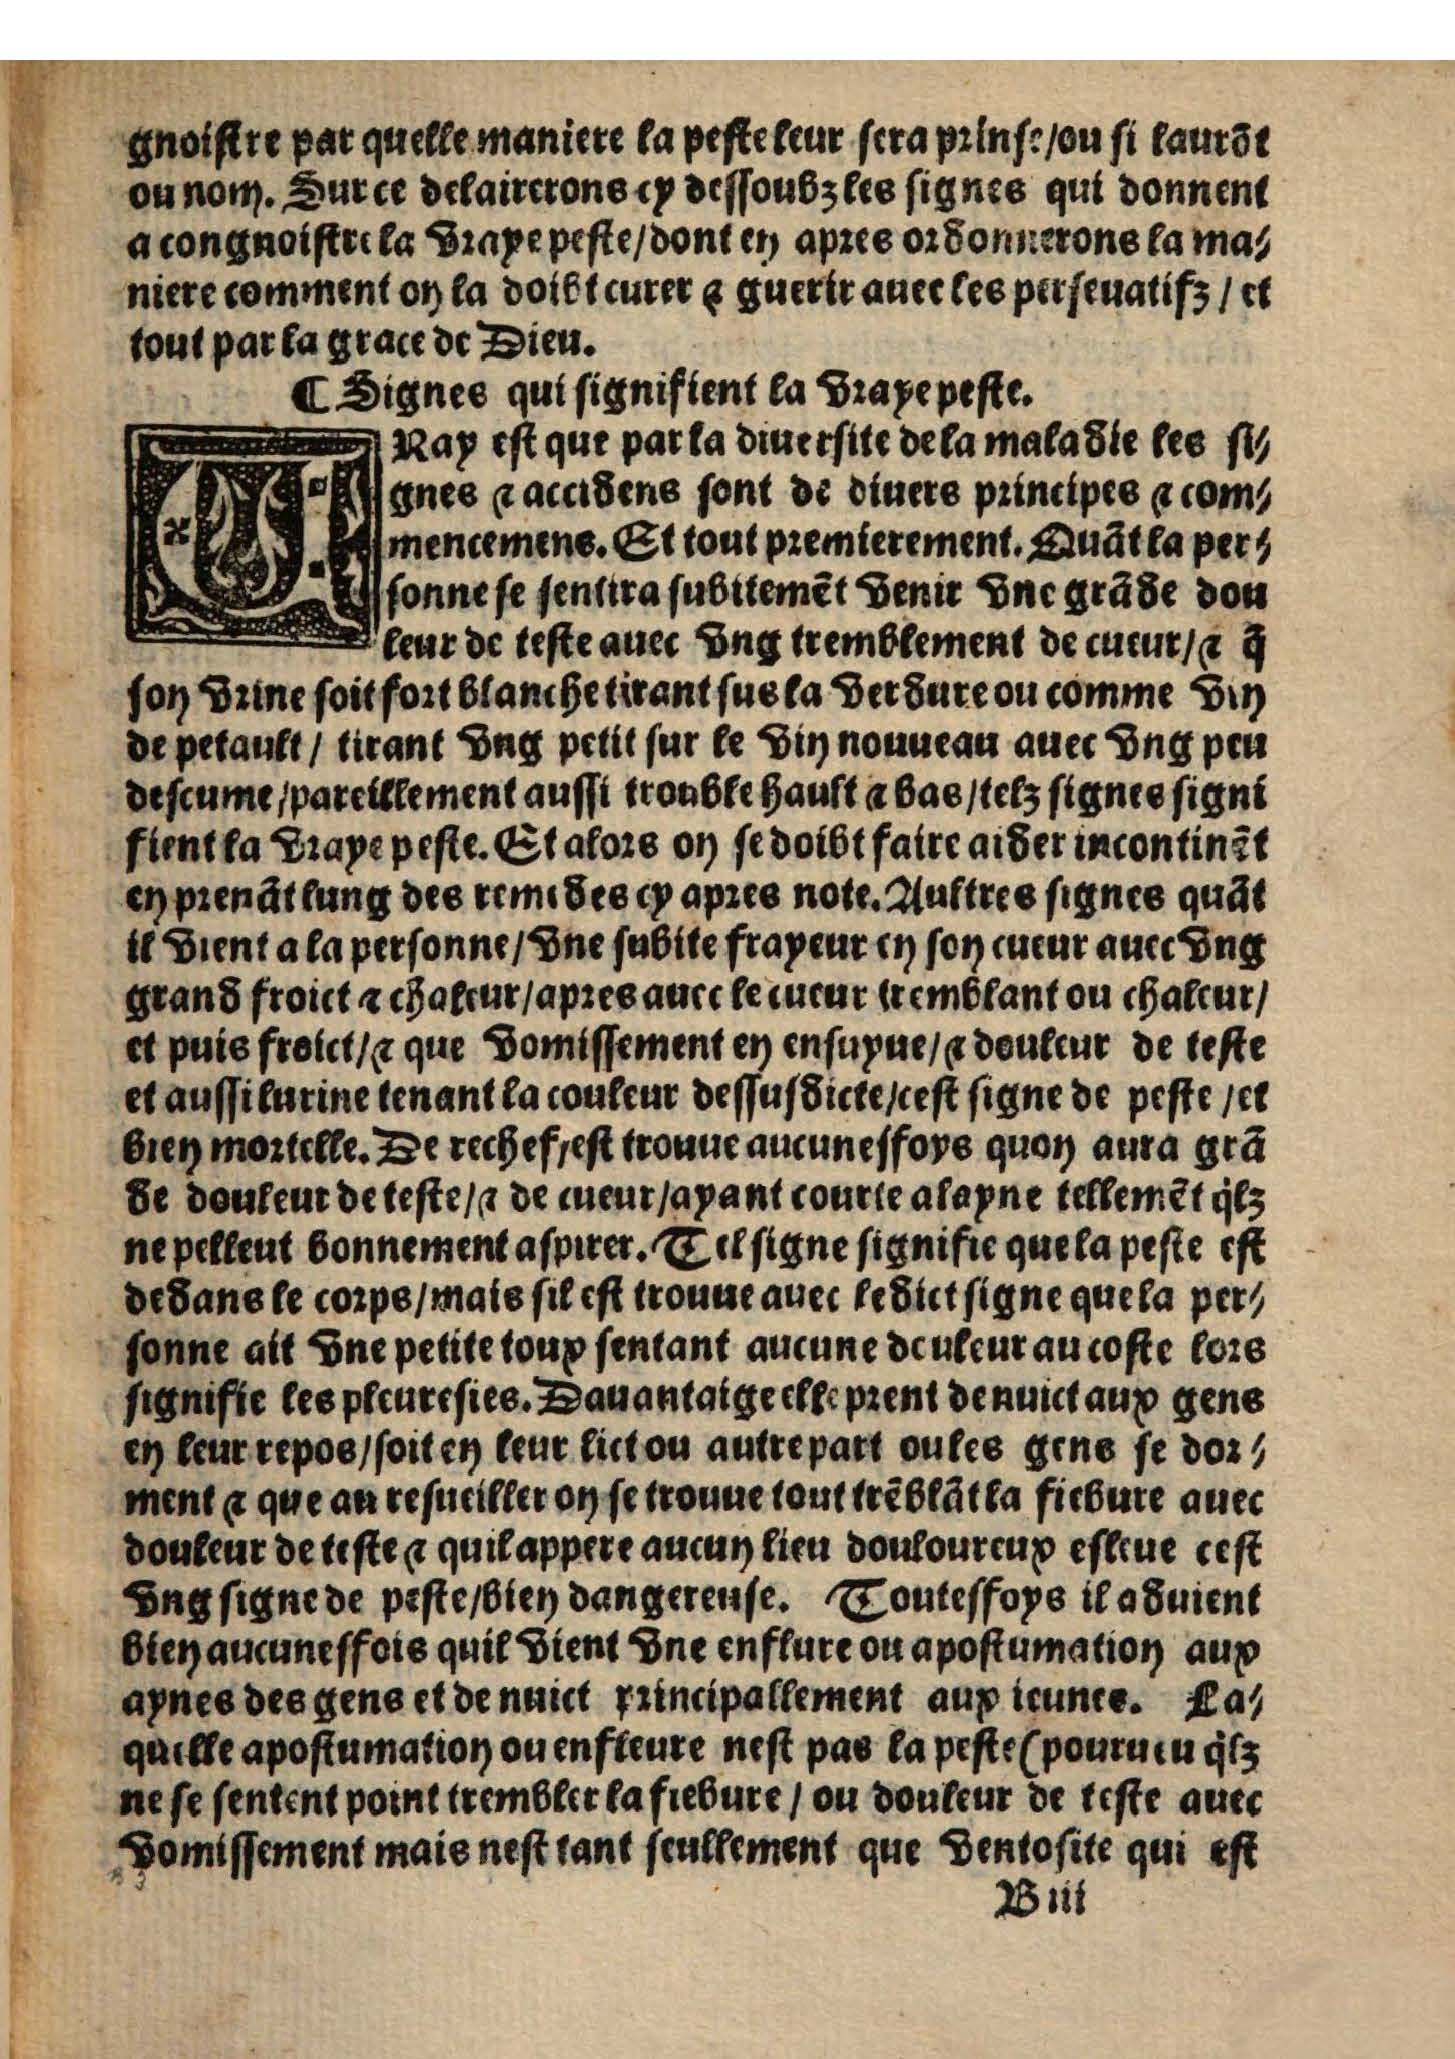 1544 s.n.1 Trésor du remède préservatif et guérison de la peste_British Library_Page_13.jpg